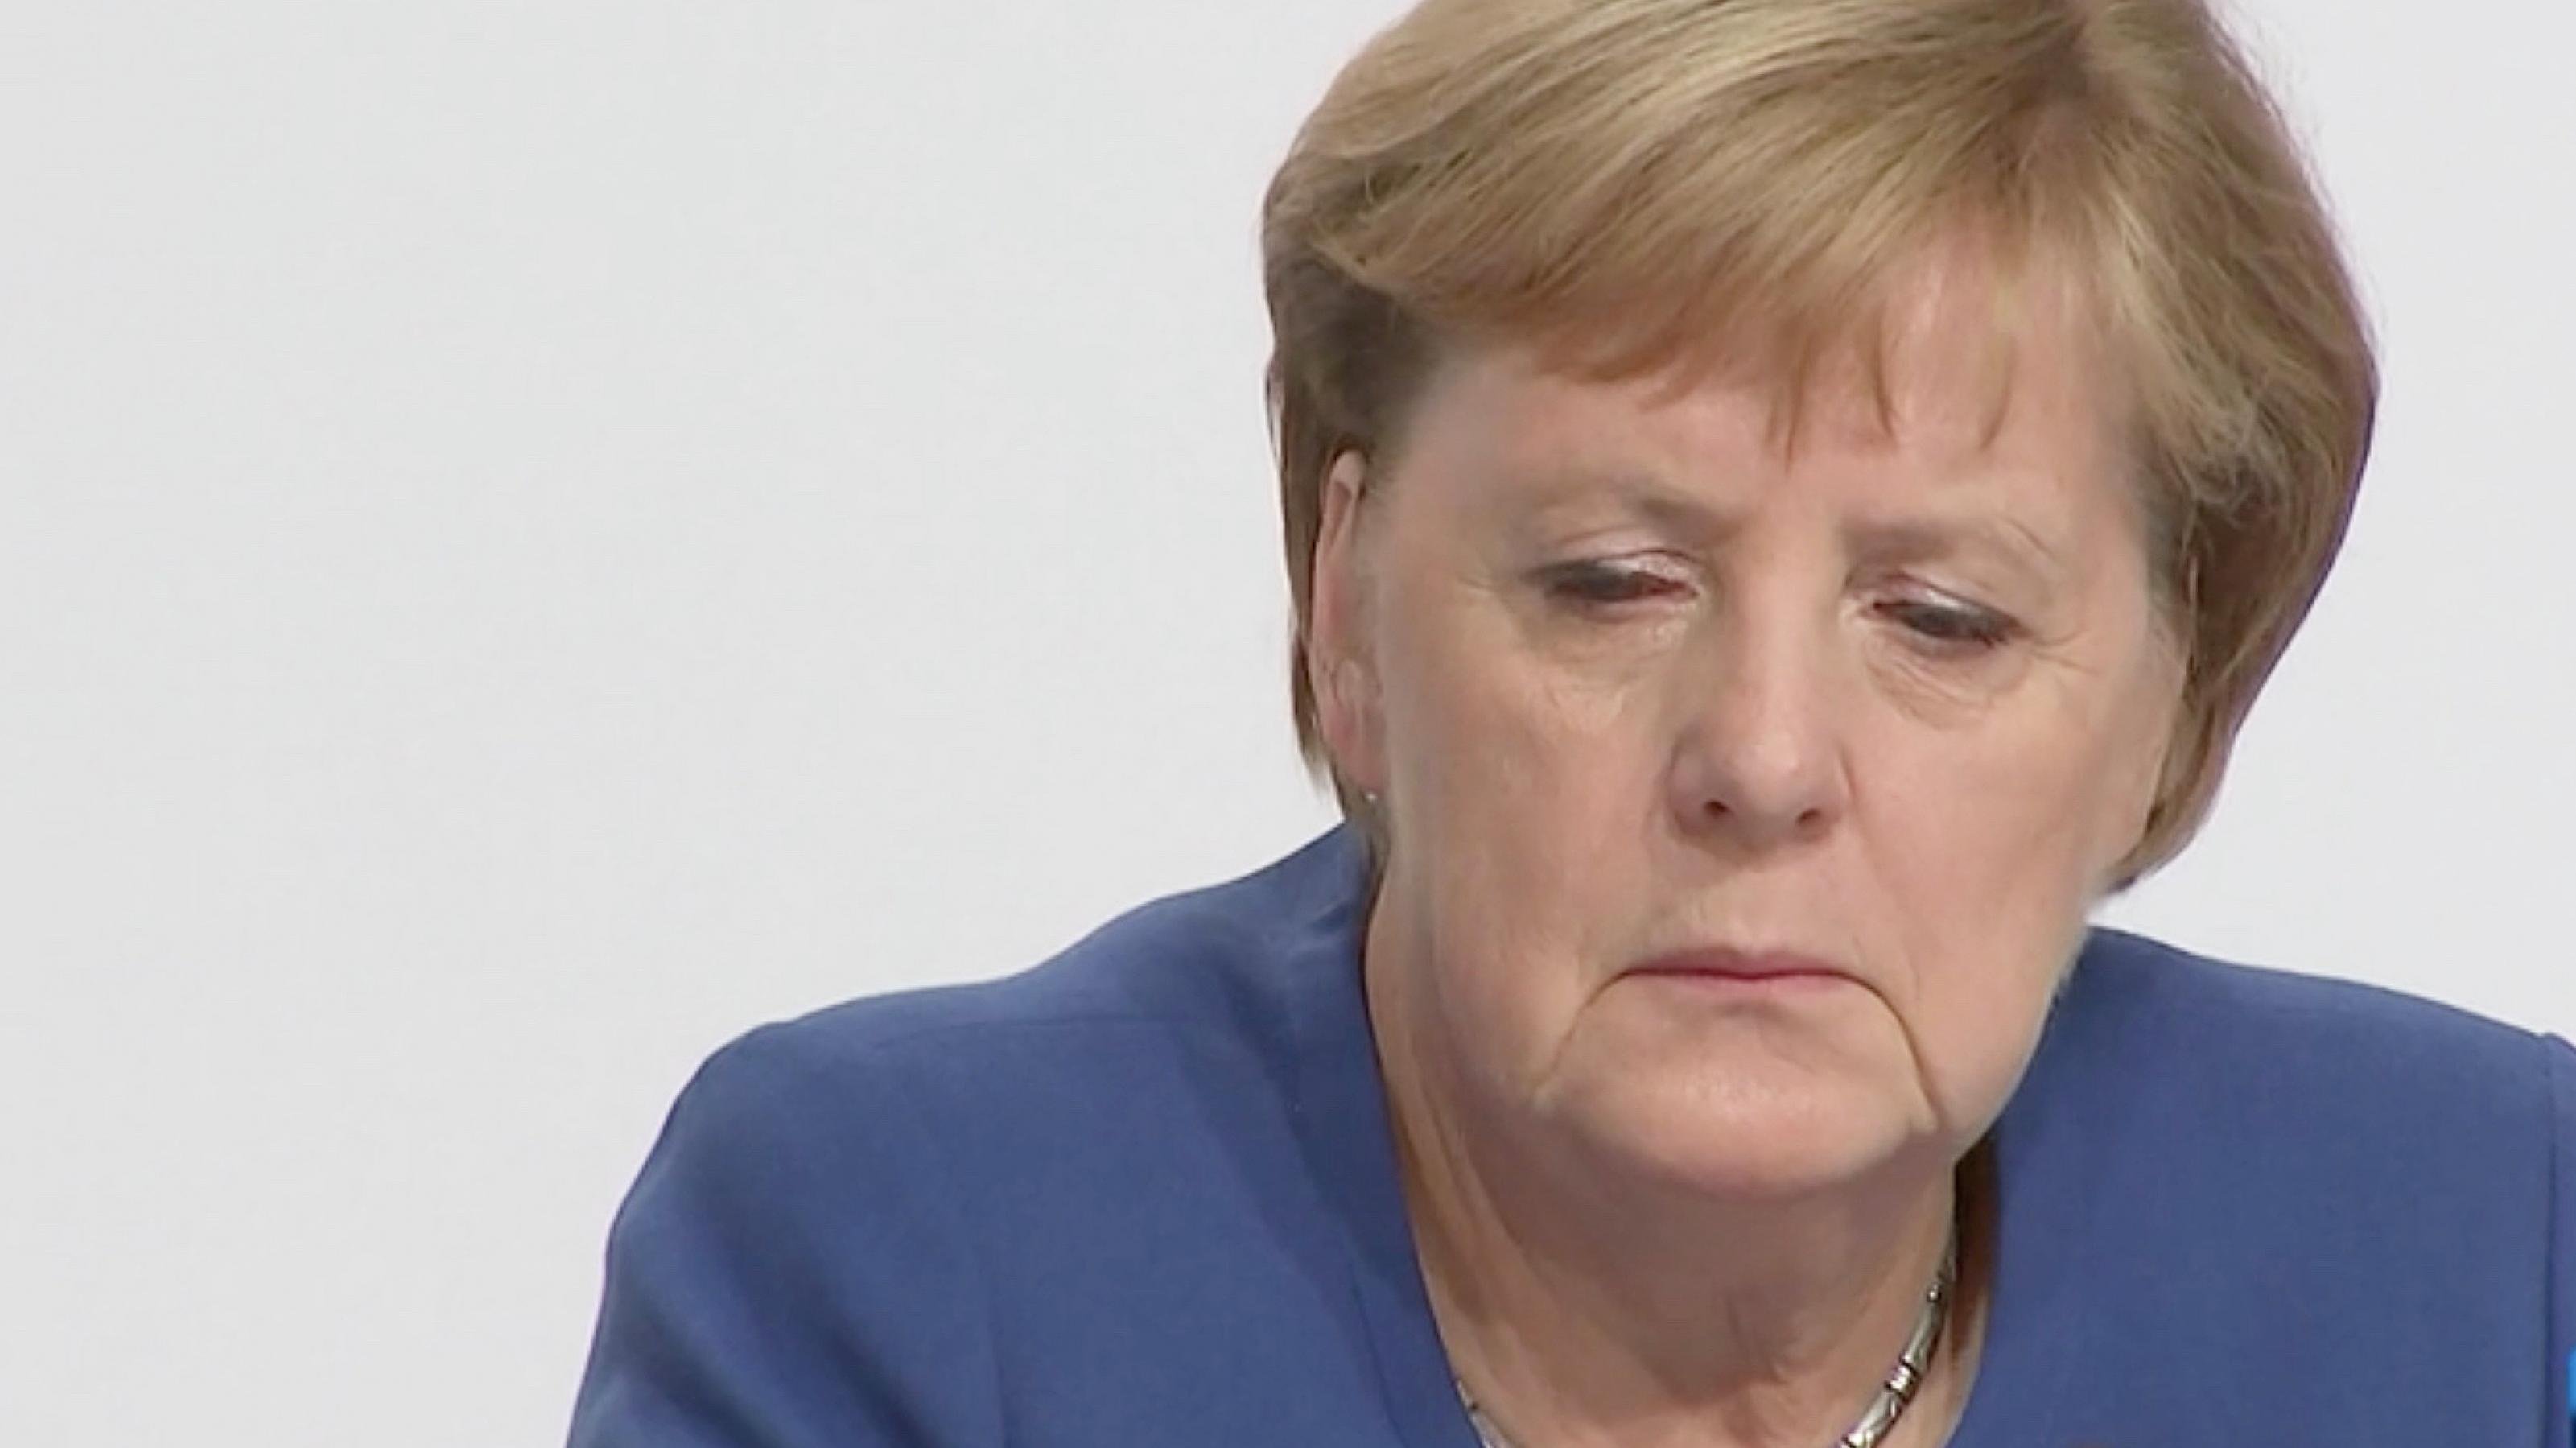 Bundeskanzlerin Angela Merkel (CDU) bei der Pressekonferenz zum Klimapaket der Bundesregierung am 20.9.2019. Auf dem Bild blickt sie schräg nach unten und sieht müde aus.